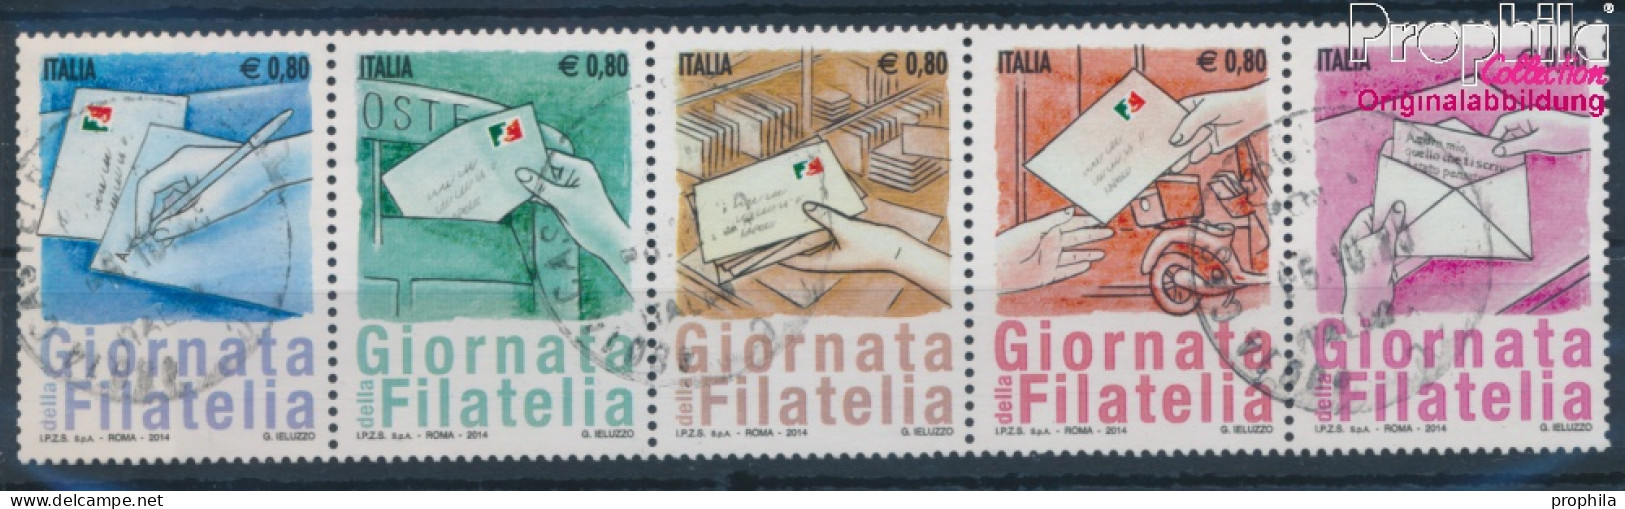 Italien 3756-3760 Fünferstreifen (kompl.Ausg.) Gestempelt 2014 Philatelie (10355217 - 2011-20: Oblitérés